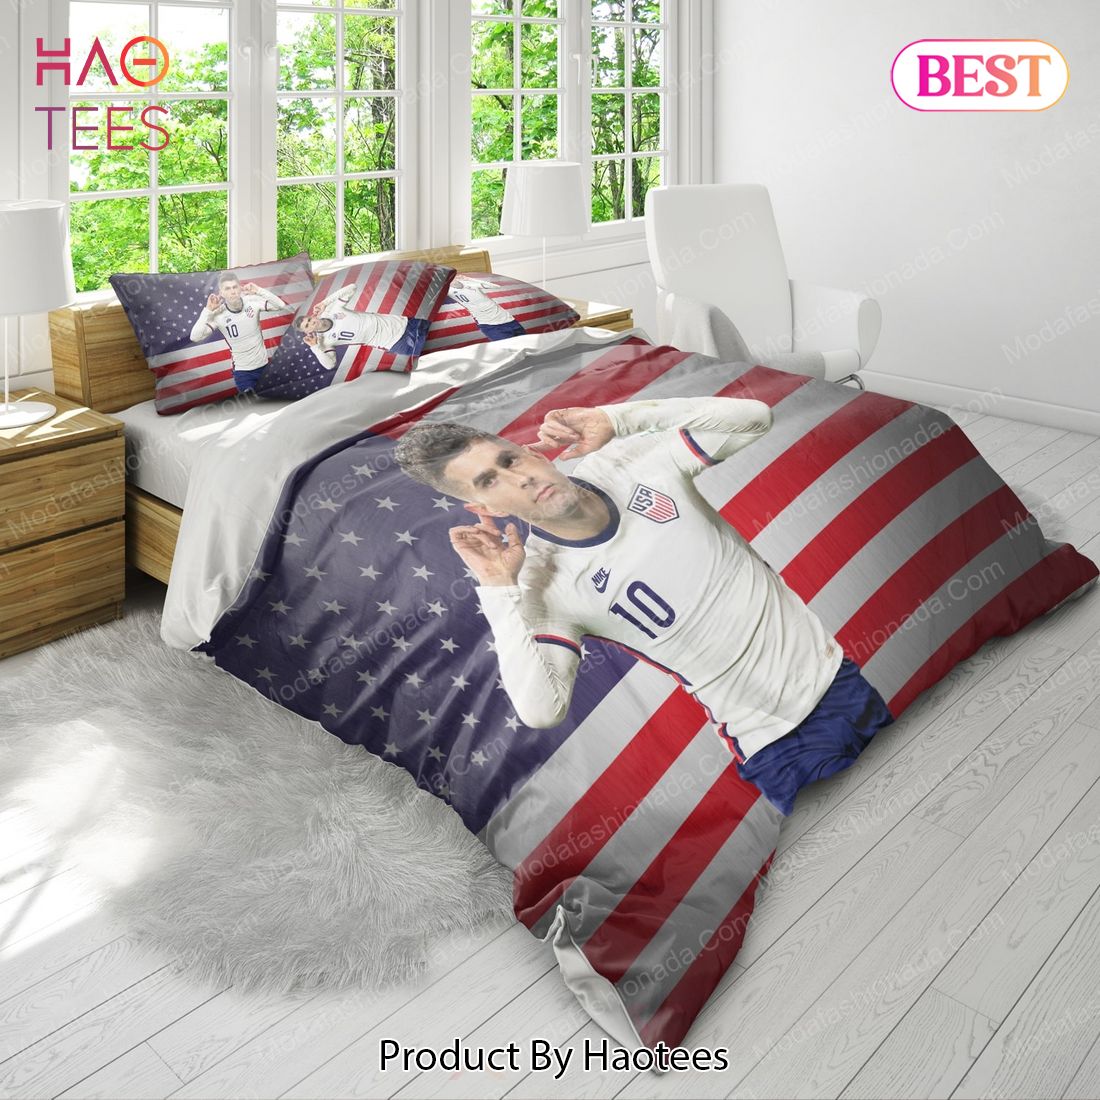 Christian Pulisic United States Bedding Sets Bed Sets, Bedroom Sets, Comforter Sets, Duvet Cover, Bedspread